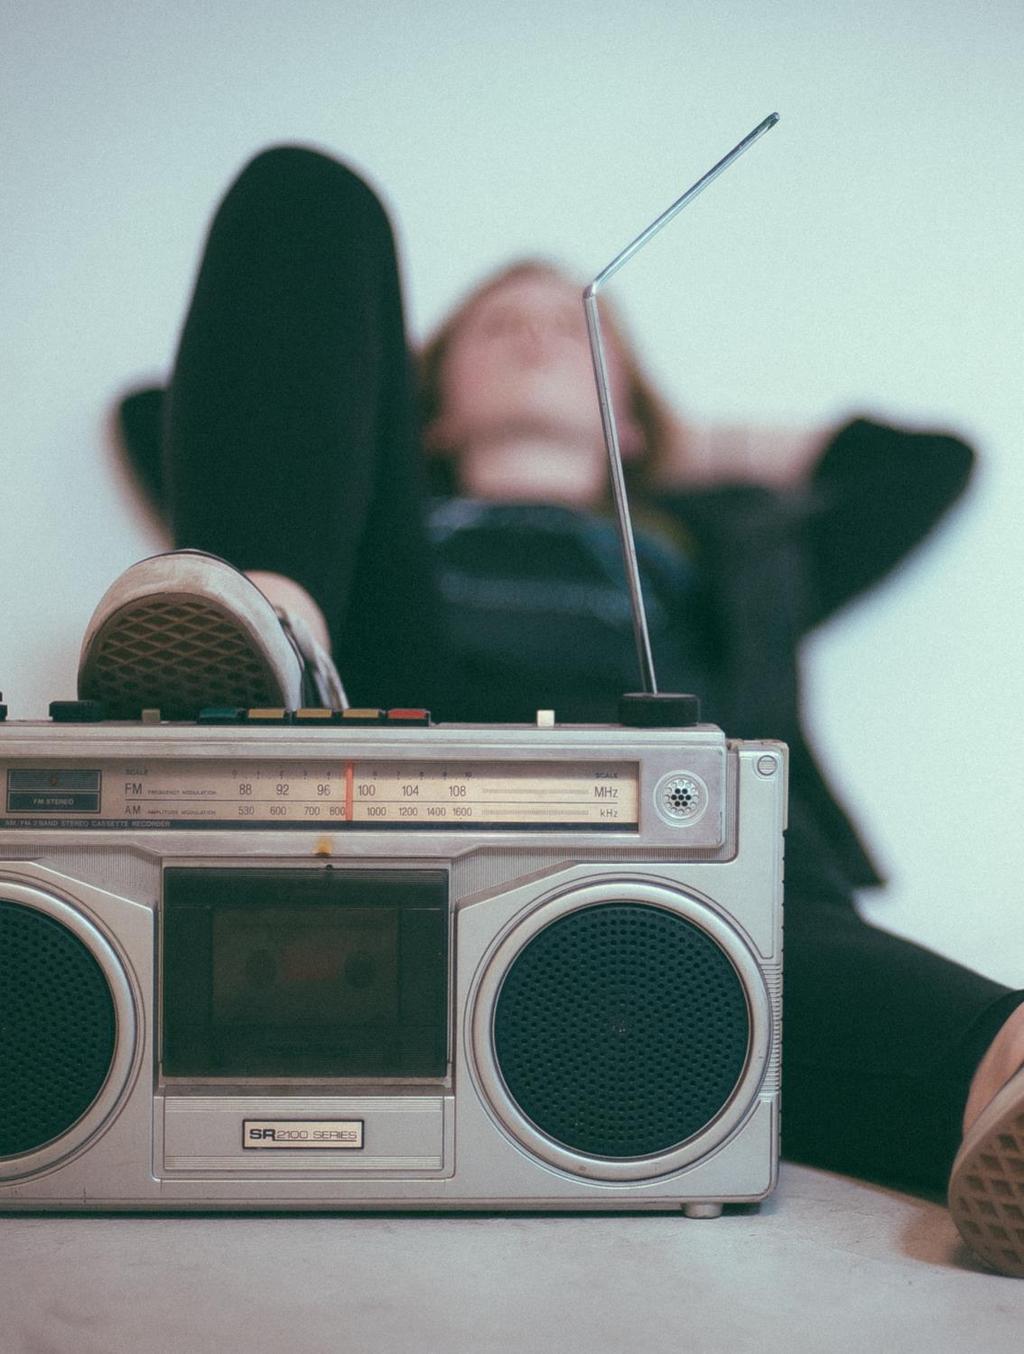 DEFINITION AUDIO Digitalt ljud kategoriseras ofta som musiktja nster, radio eller podcasts men skillnaderna blir allt mindre.